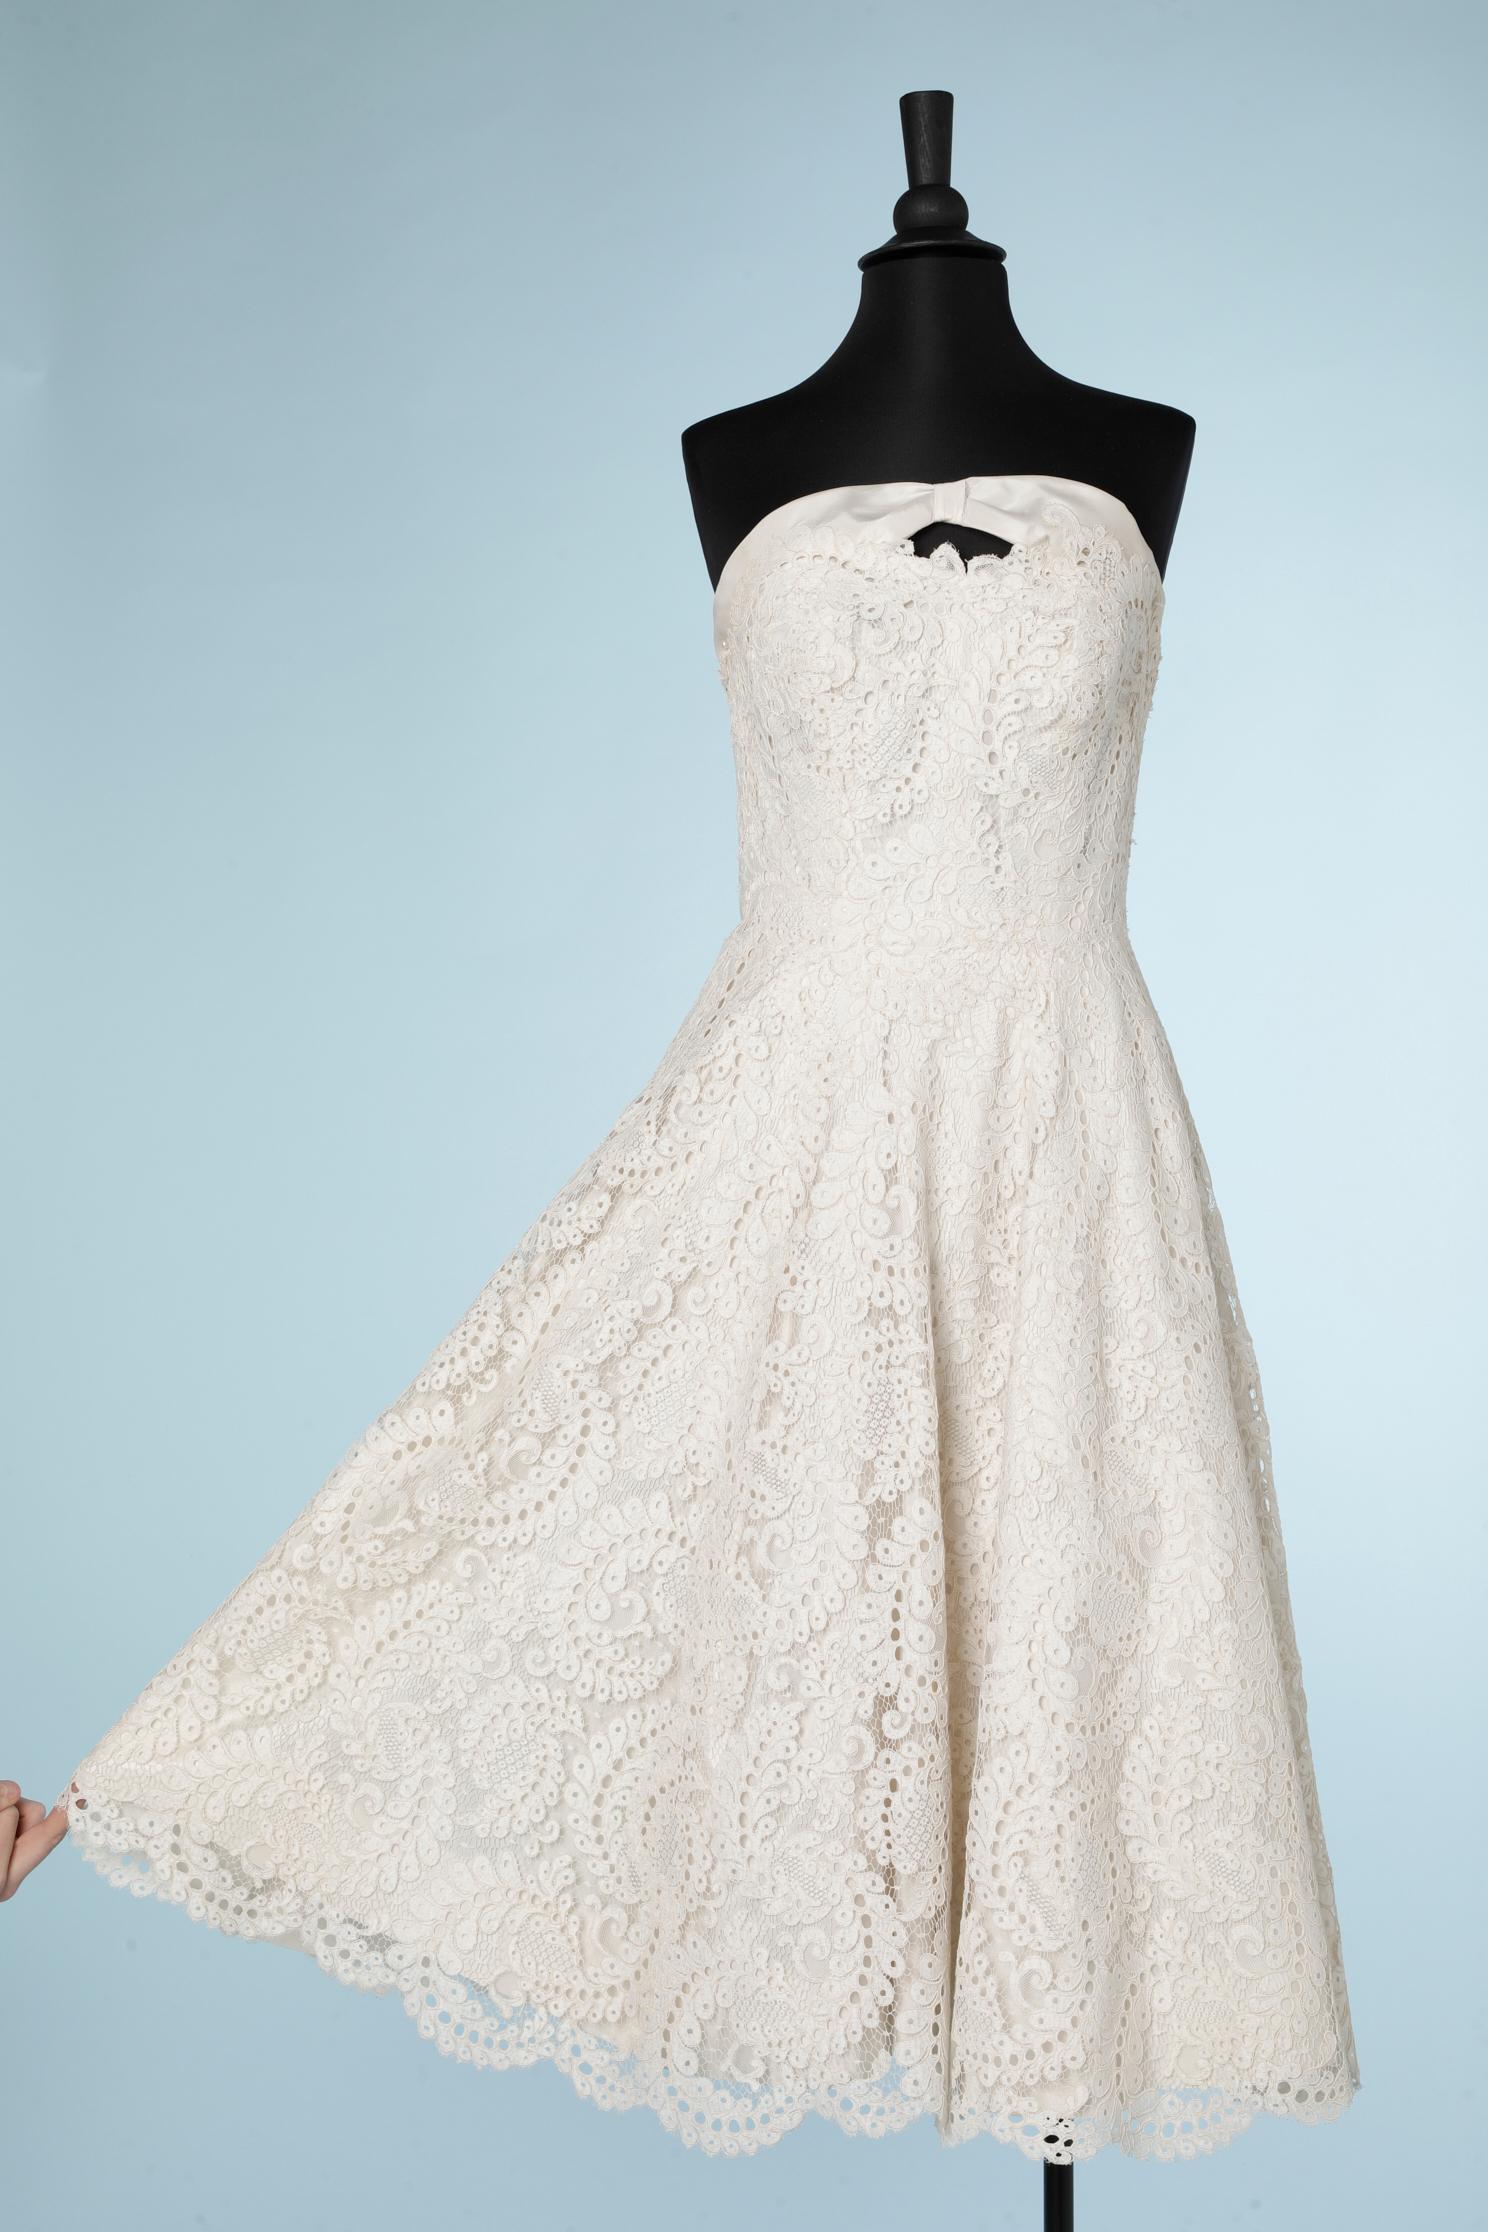 Robe de mariée à bustier en guipure blanche. Sous-robe avec bustier désossé, fermeture à glissière dans le dos et jupon en tulle avec crochet. Une deuxième fermeture à glissière se trouve en haut de la première, au milieu du dos, pour fermer la